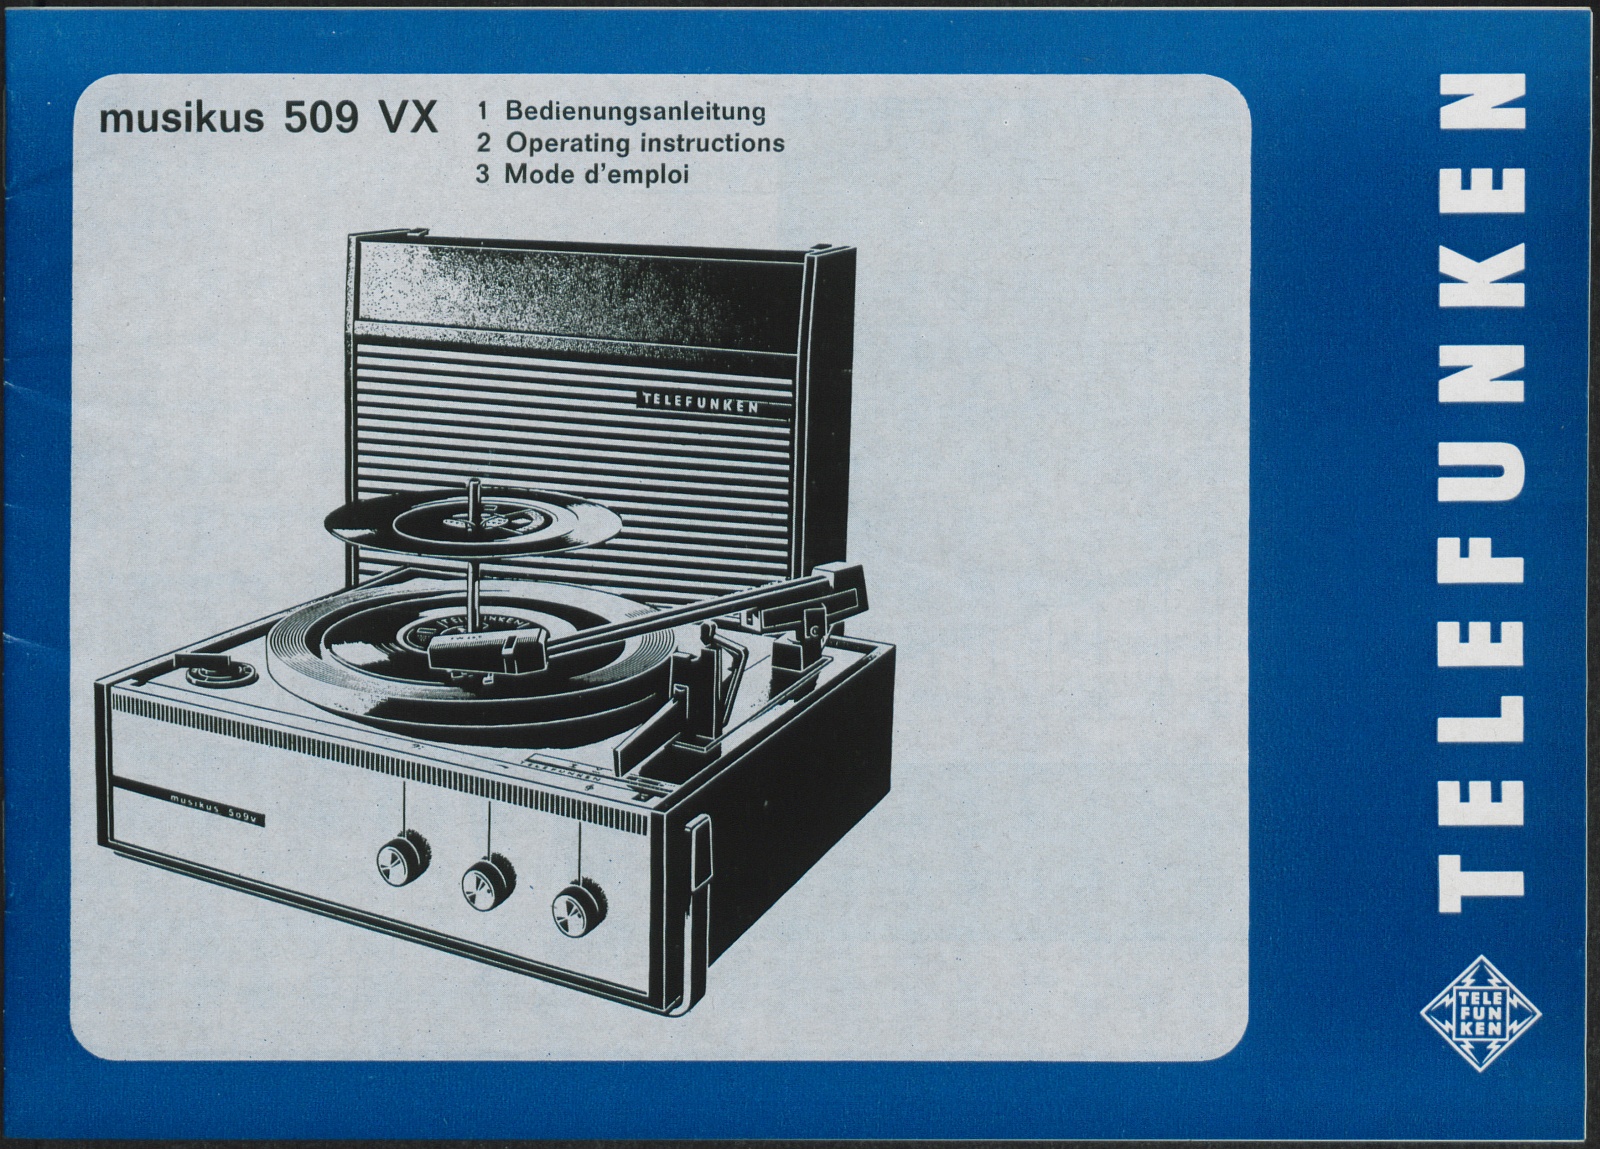 Bedienungsanleitung: Bedienungsanleitung für musikus 509 VX (Stiftung Deutsches Technikmuseum Berlin CC0)